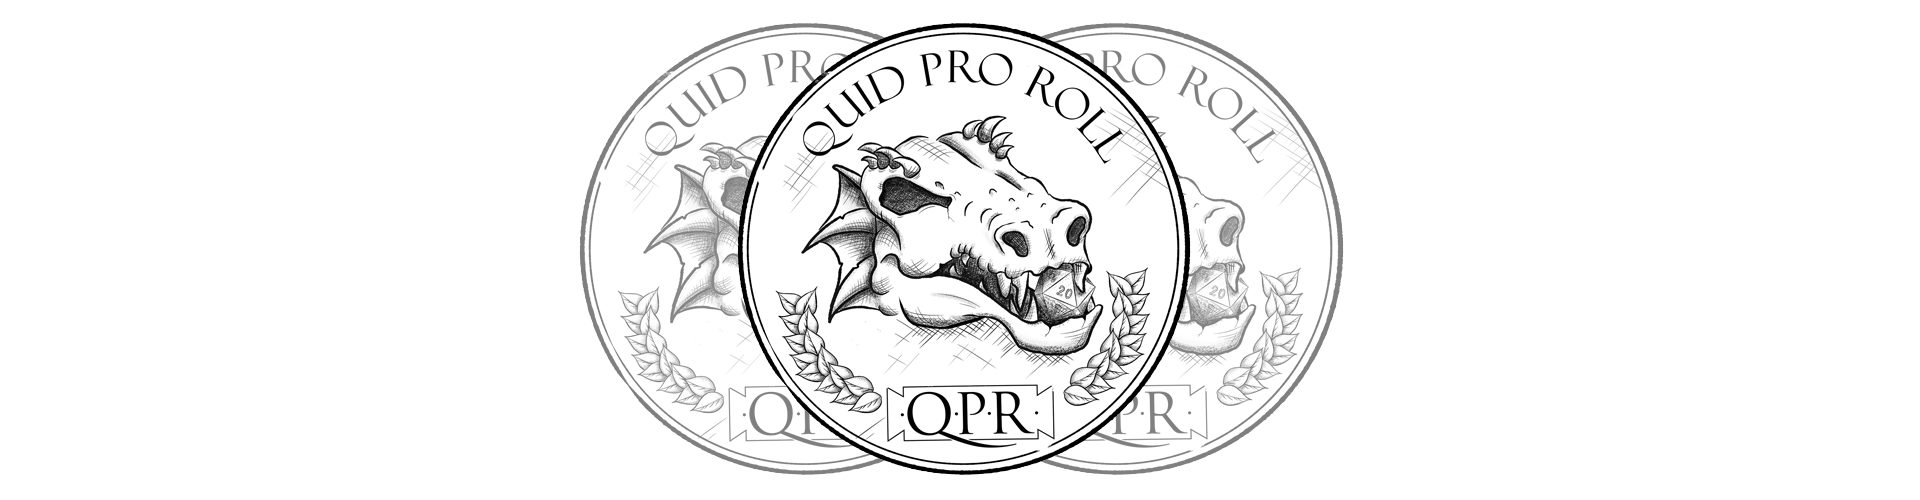 Quid Pro Roll